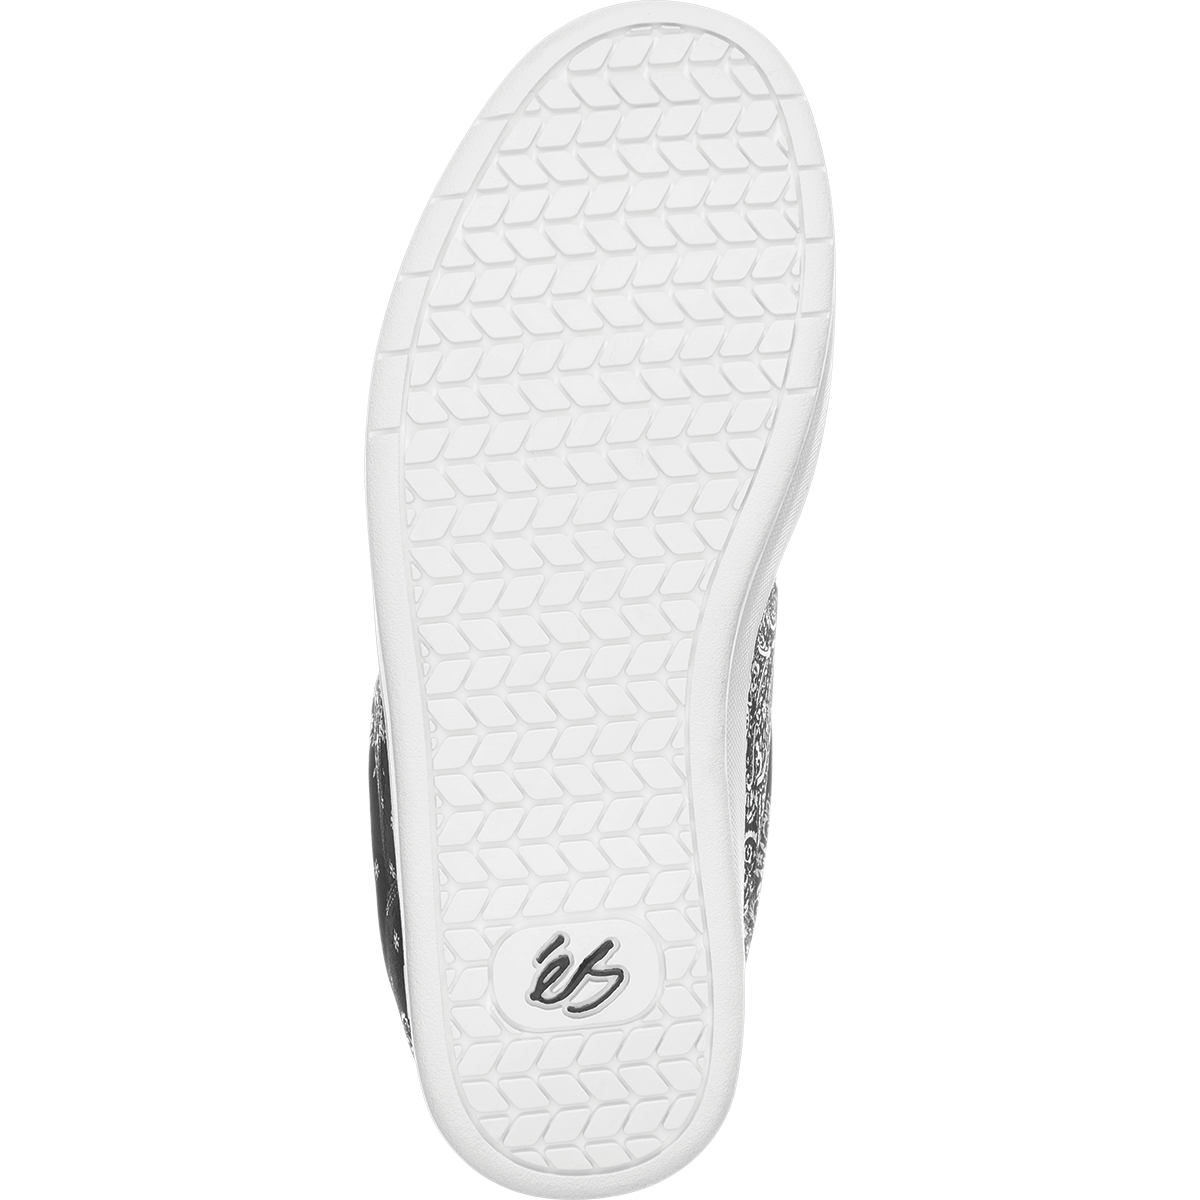 Bandana Printed OG Accel eS Skateboarding Shoe Bottom